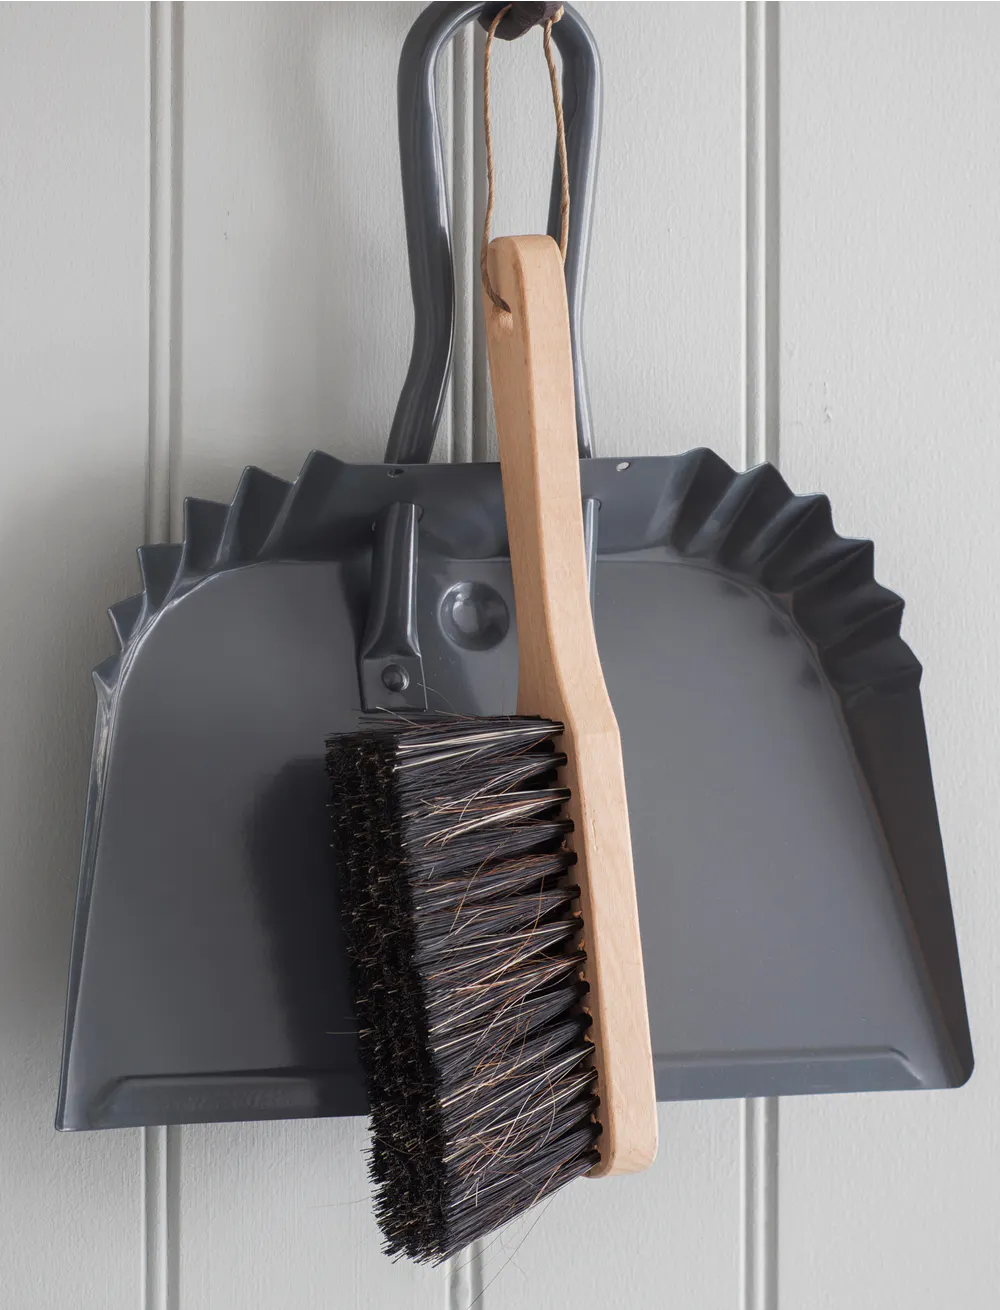 Metal Dustpan and Brush